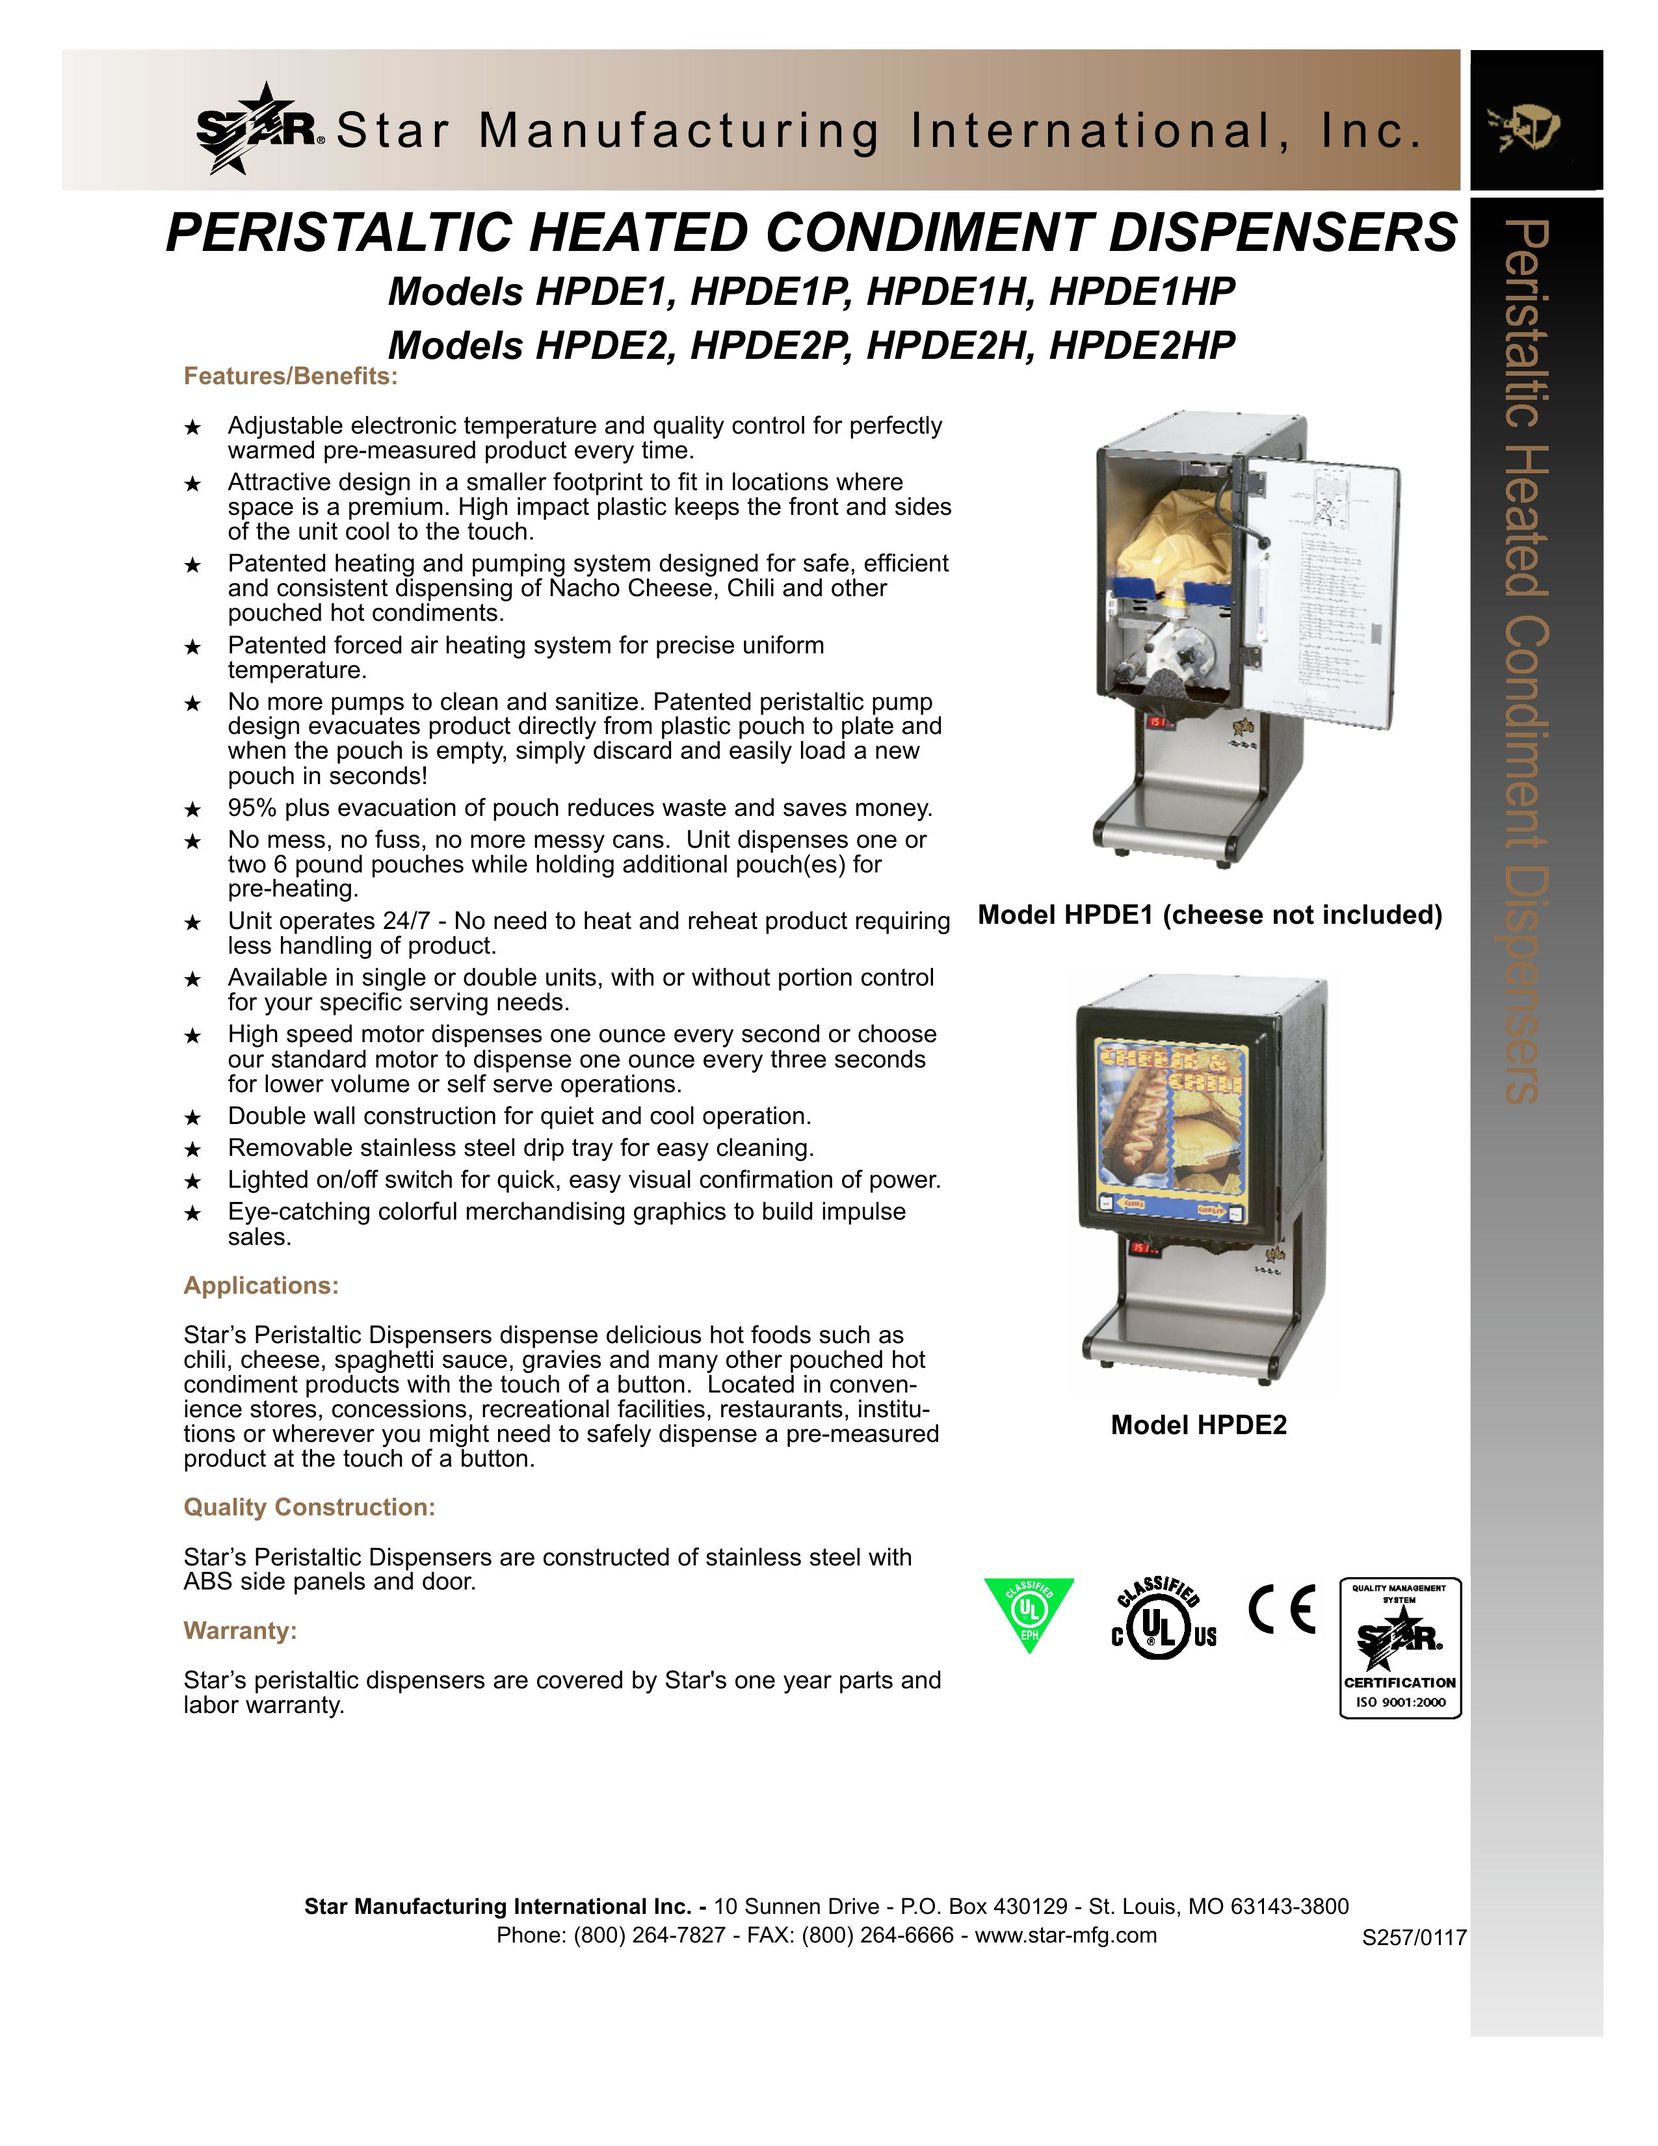 Star Manufacturing HPDE1 Beverage Dispenser User Manual